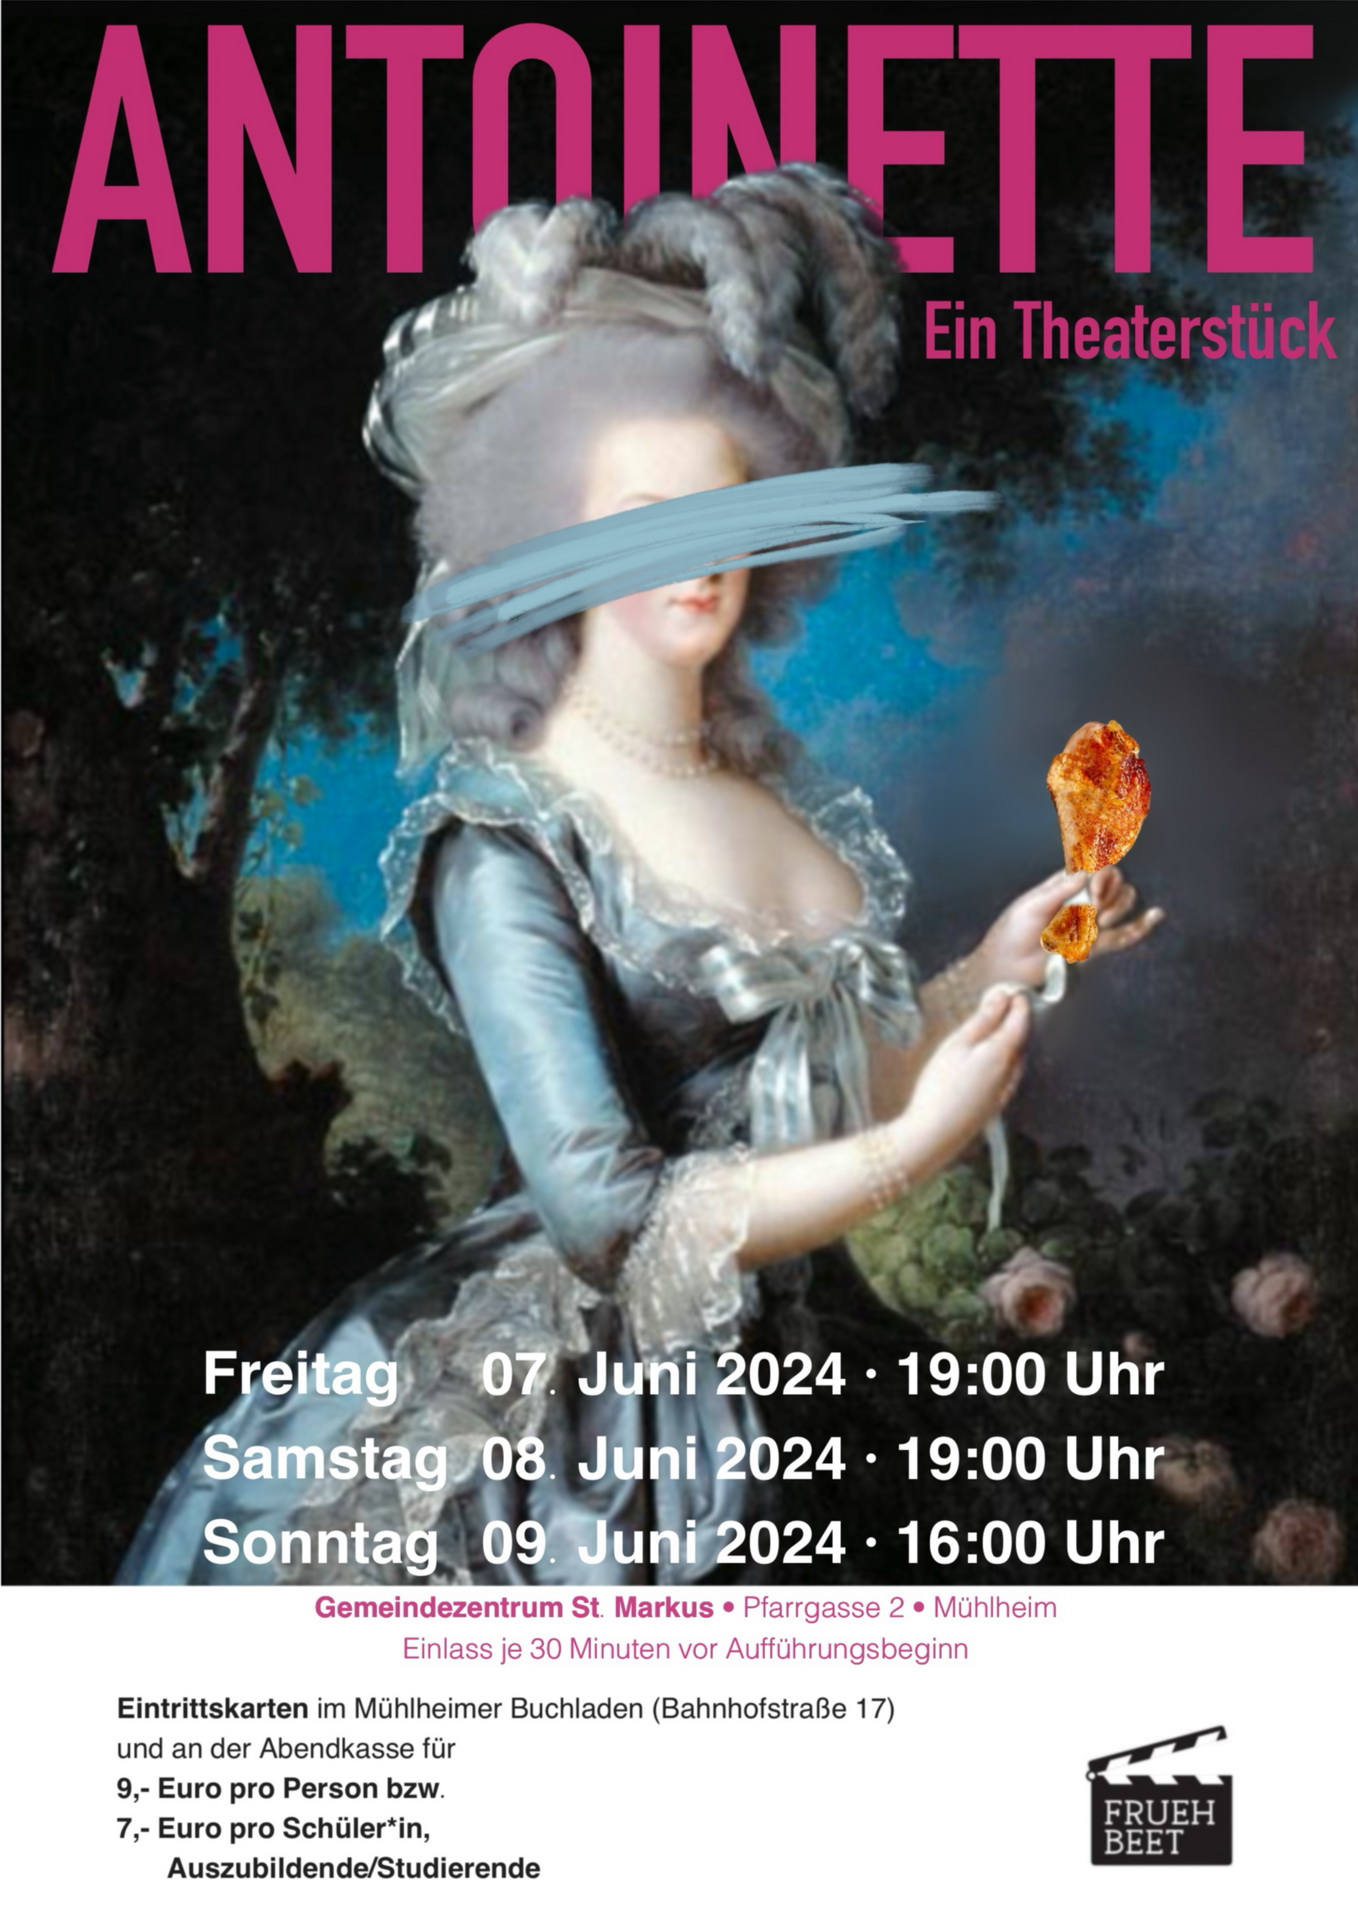 Antoinette_Poster_A3 (c) Jugendtheatergruppe FrühBeet